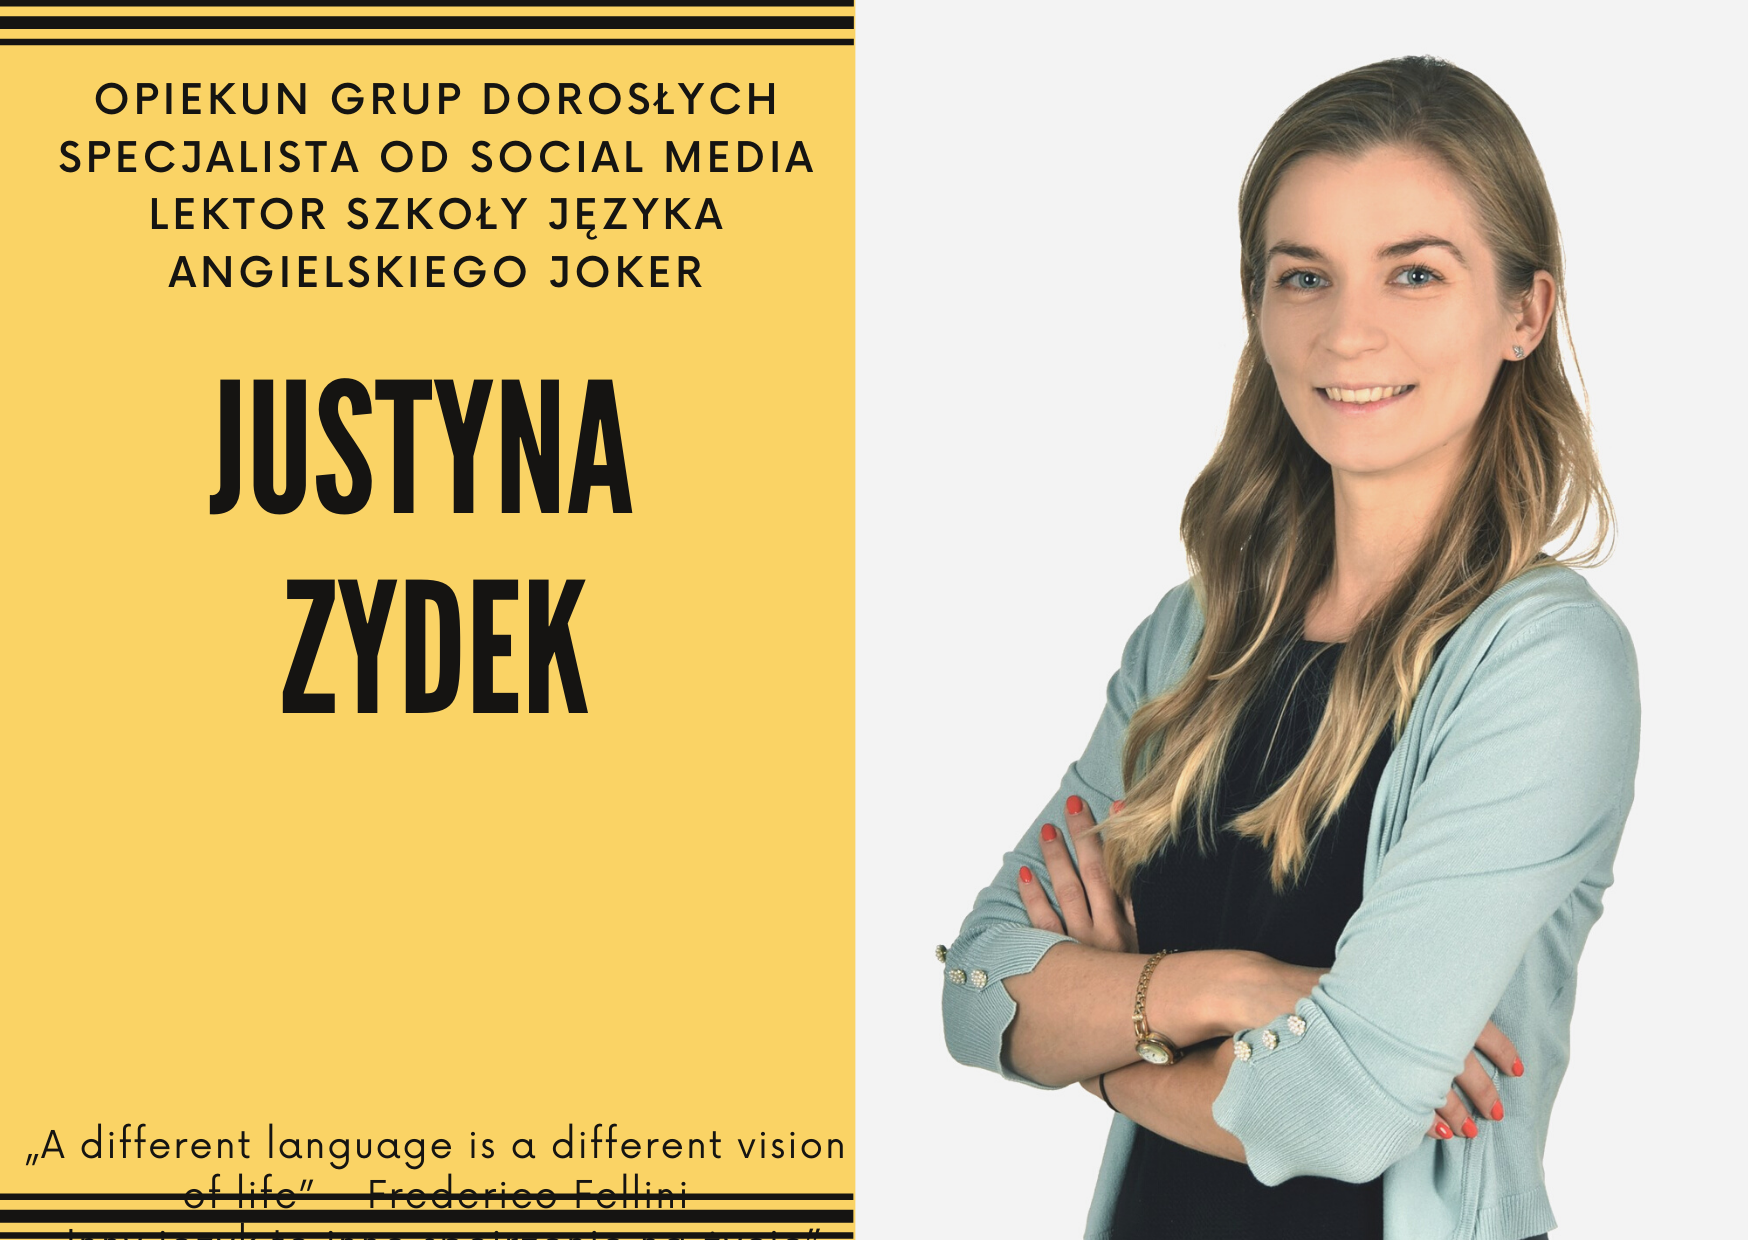 Kontakt<div>justyna.zydek@jokerangielski.pl<br></div>